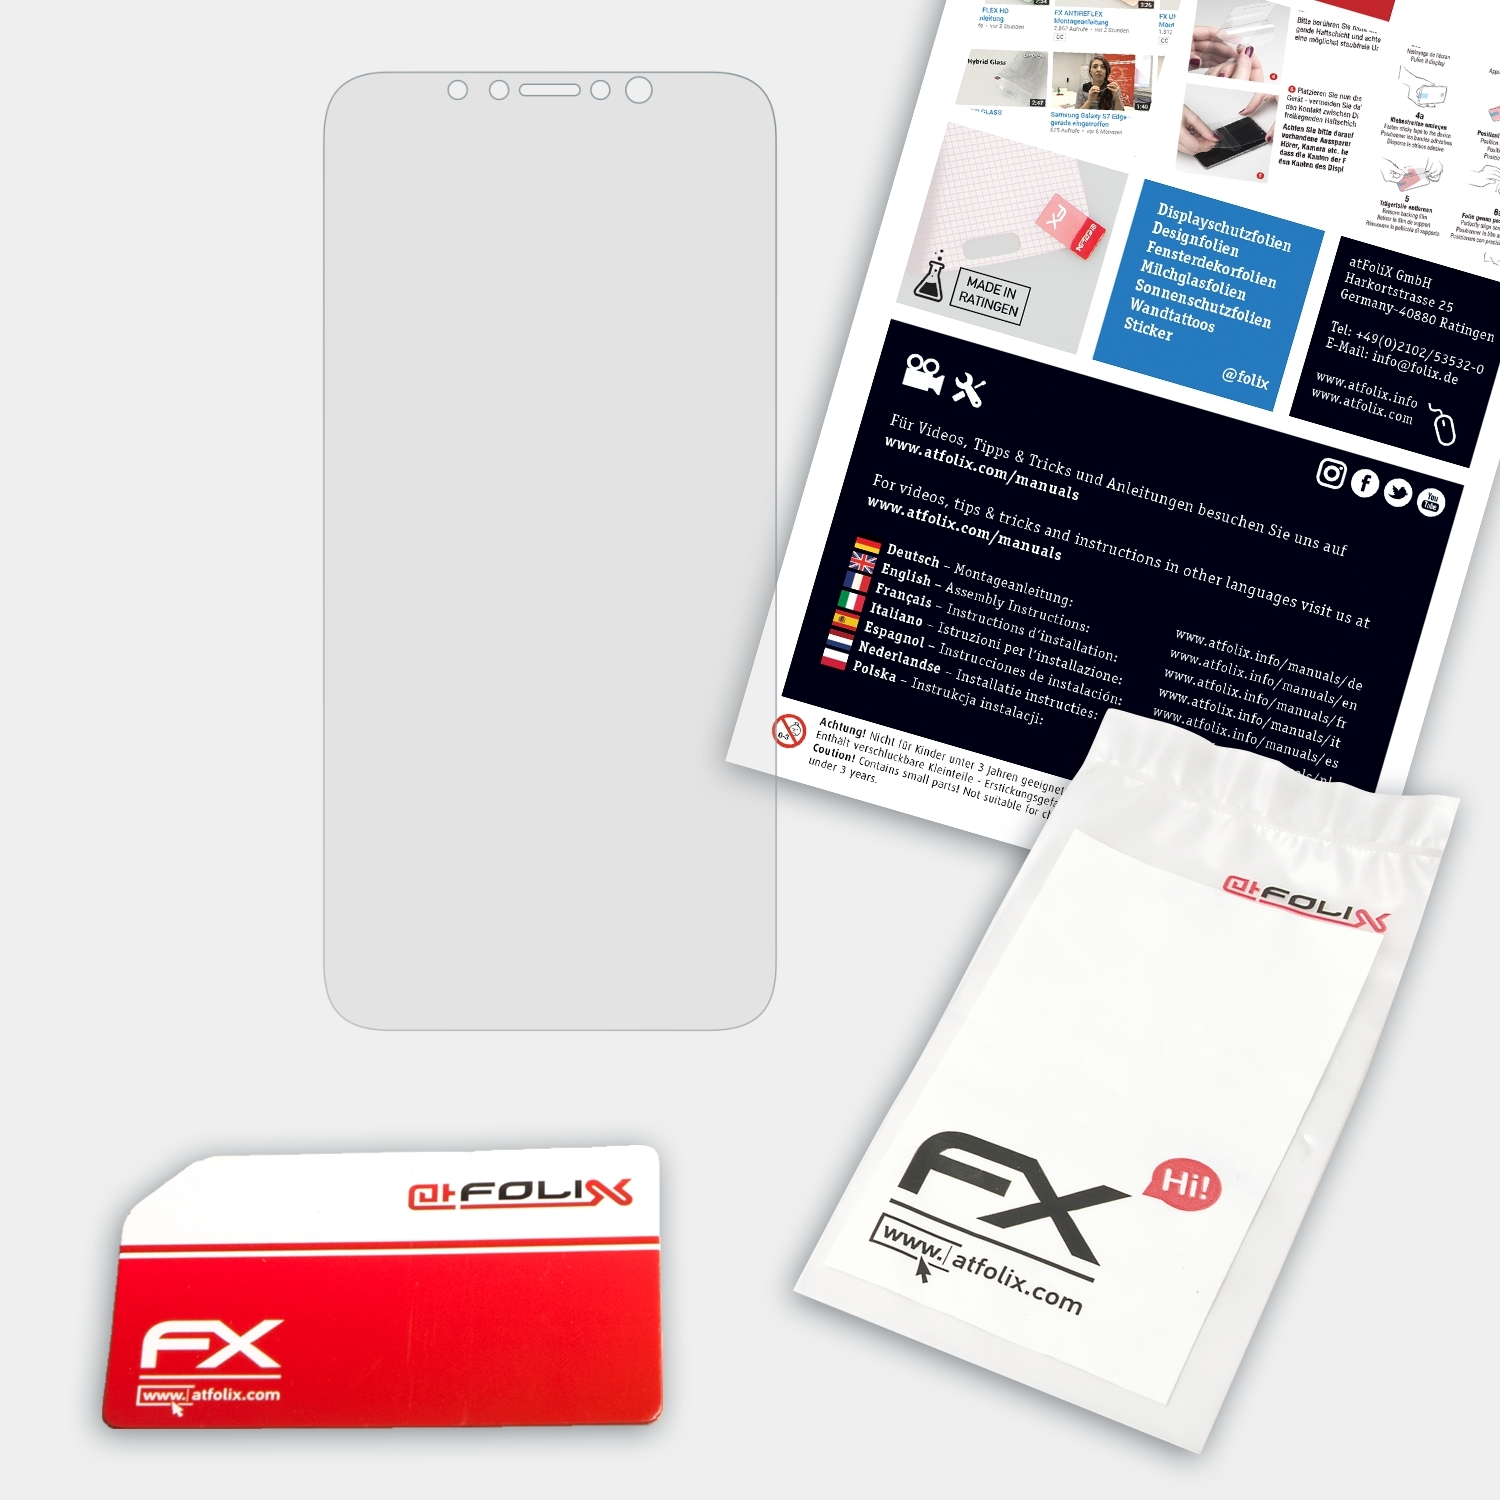 FX-Hybrid-Glass iPhone Apple (Front cover)) ATFOLIX XR Schutzglas(für